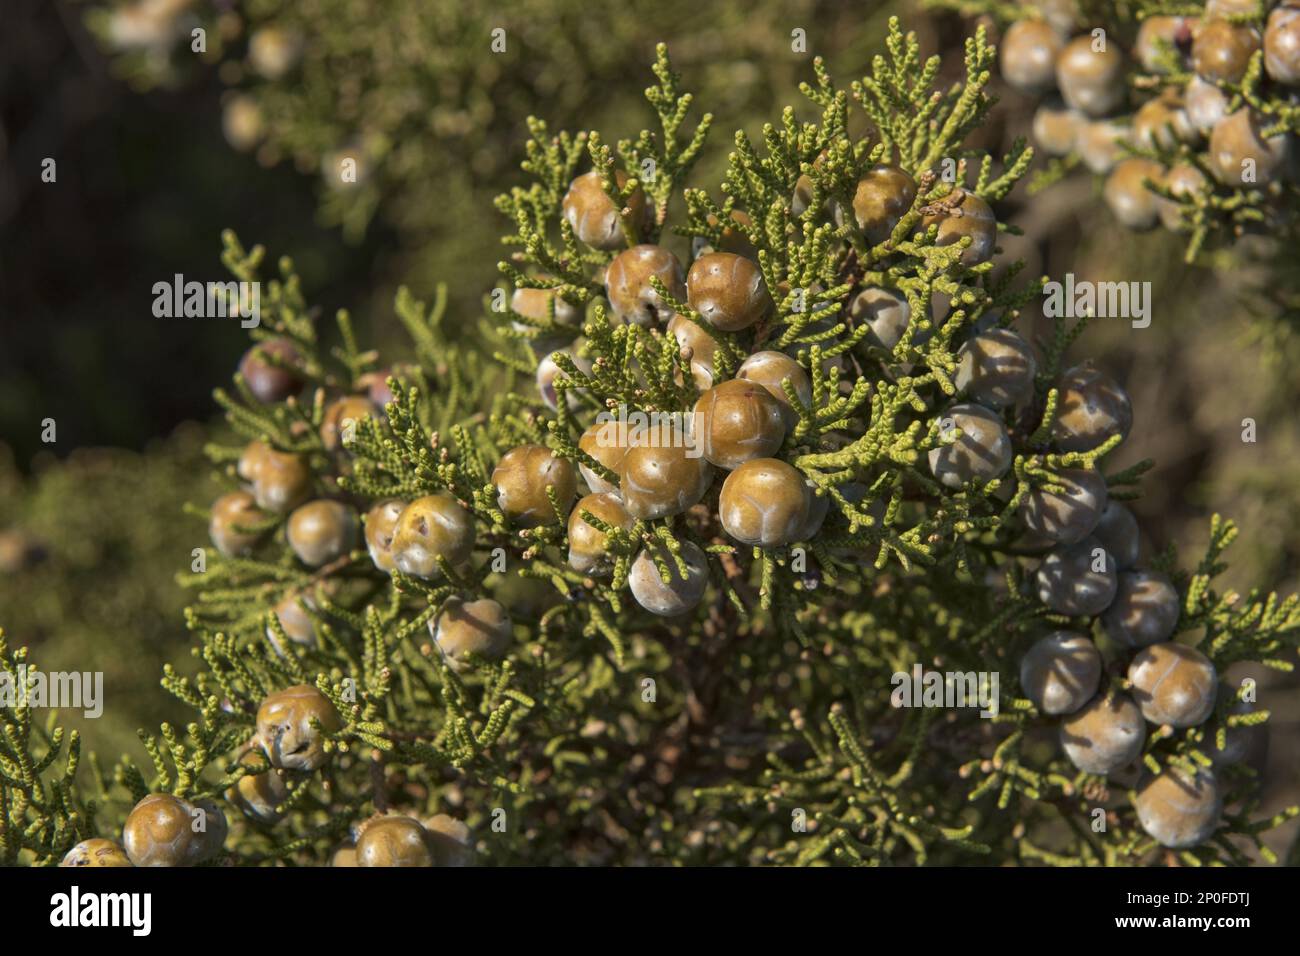 Phönizische Wacholderbeere (Juniperus), RotfruchtJuniper, Familie der Zypressen, phönizische Wacholderbeere oder Arar phoenicia, mit Beeren an der Küste des roten Granits Stockfoto